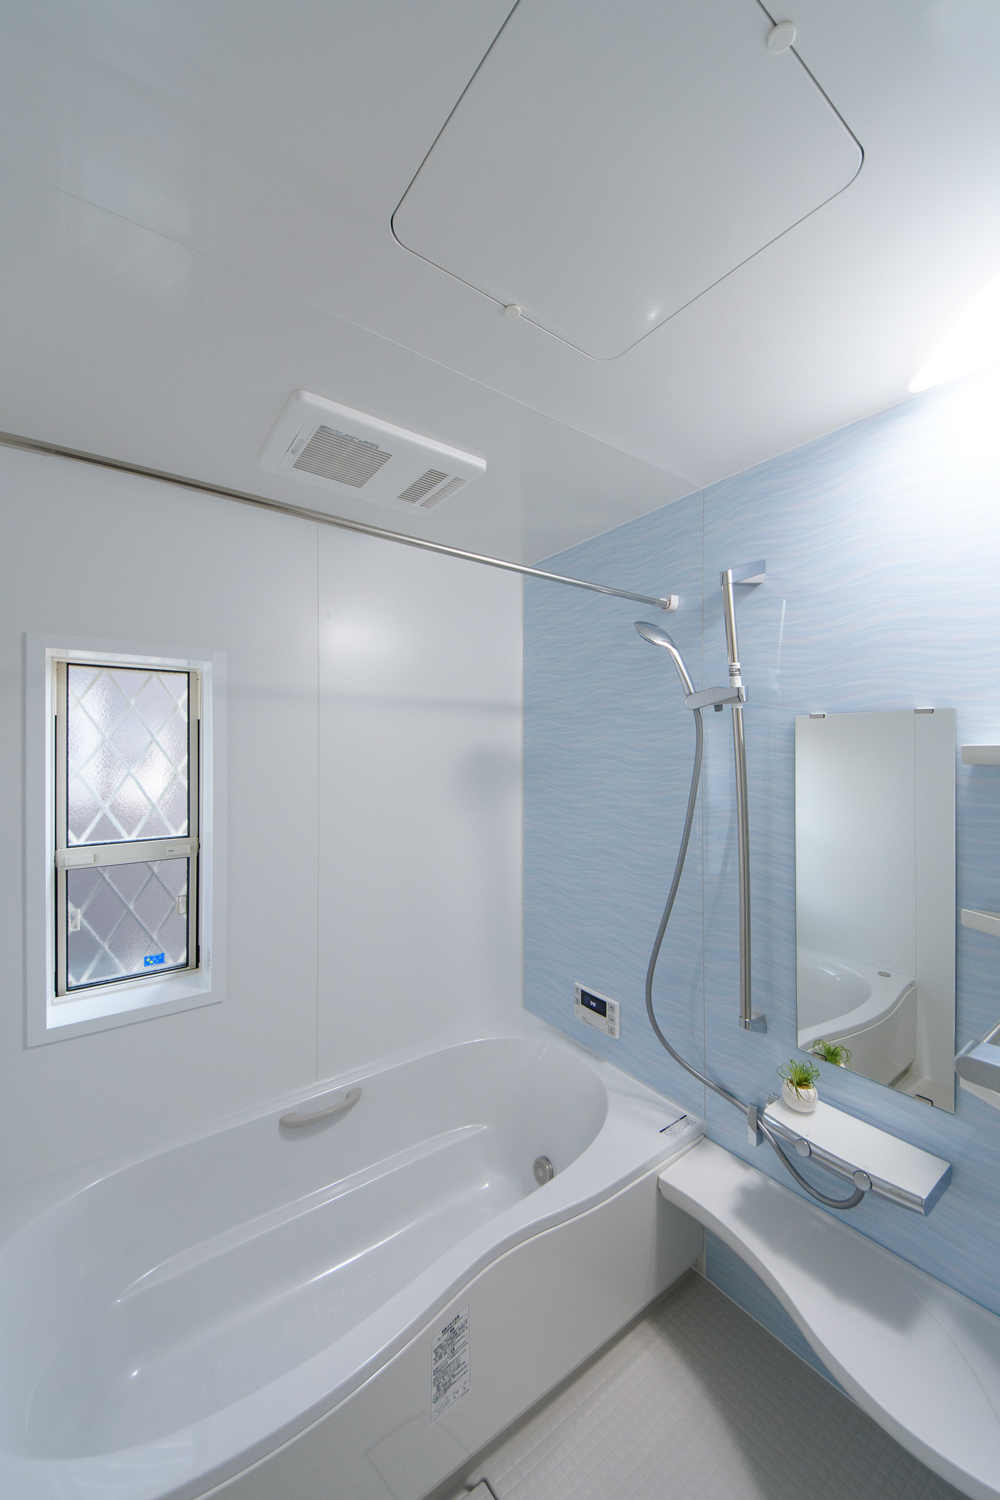 爽やかな柄のアクセントパネルが浴室空間を彩ります。